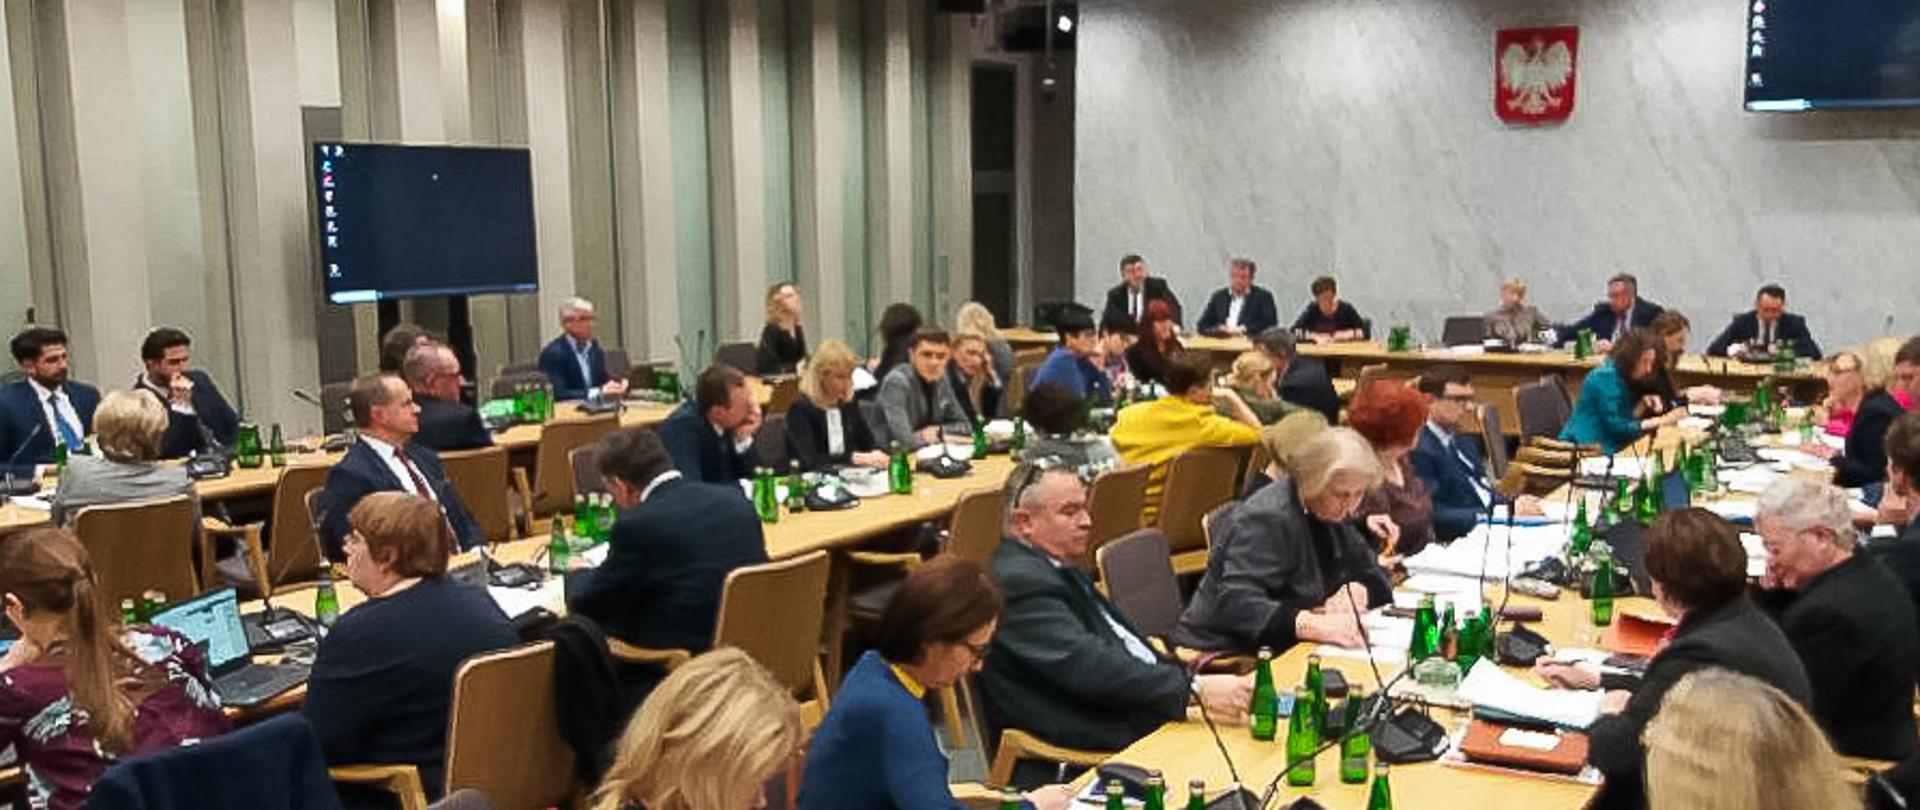 Posiedzenie Sejmowej Komisji Edukacji, Nauki i Młodzieży z udziałem ministra edukacji. Ludzie siedzą przy stołach w dużej sali i dyskutują.